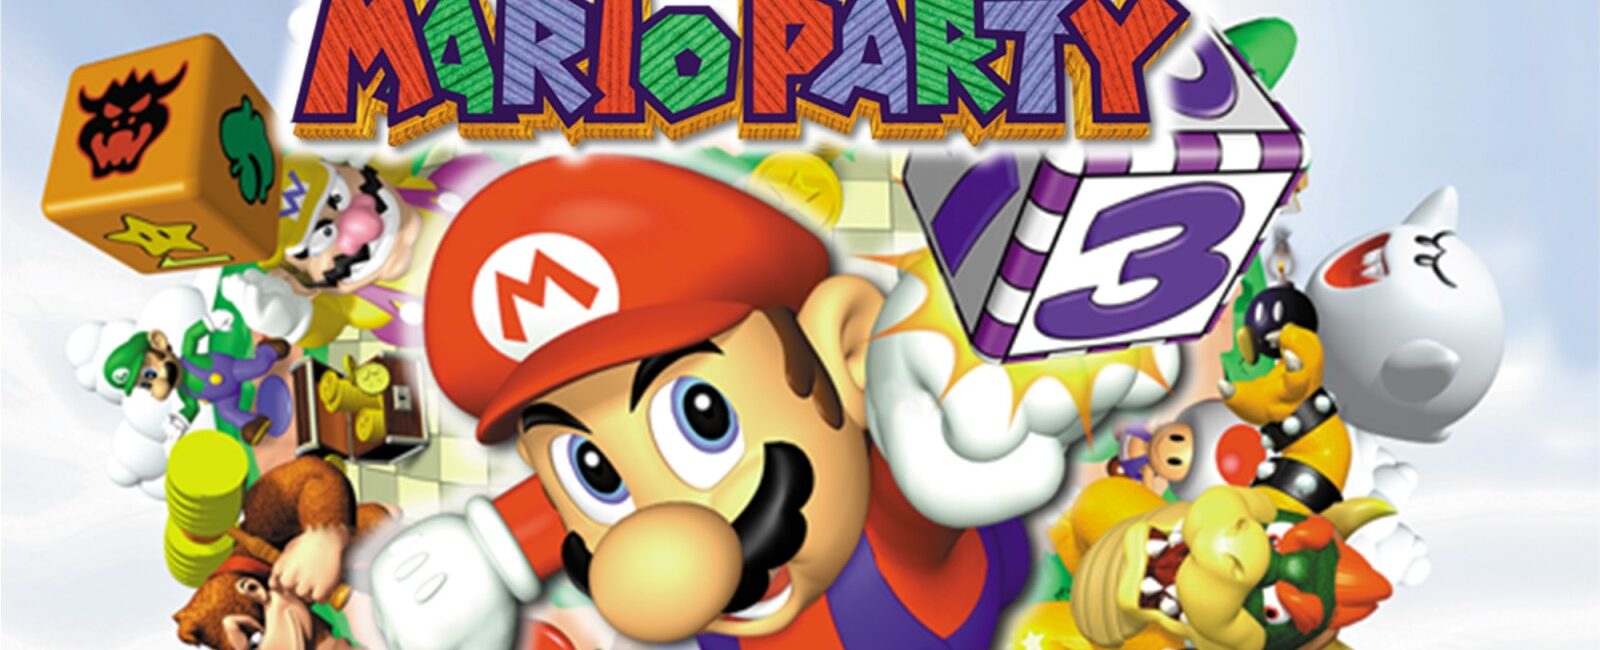 Mario Party box art widescreen